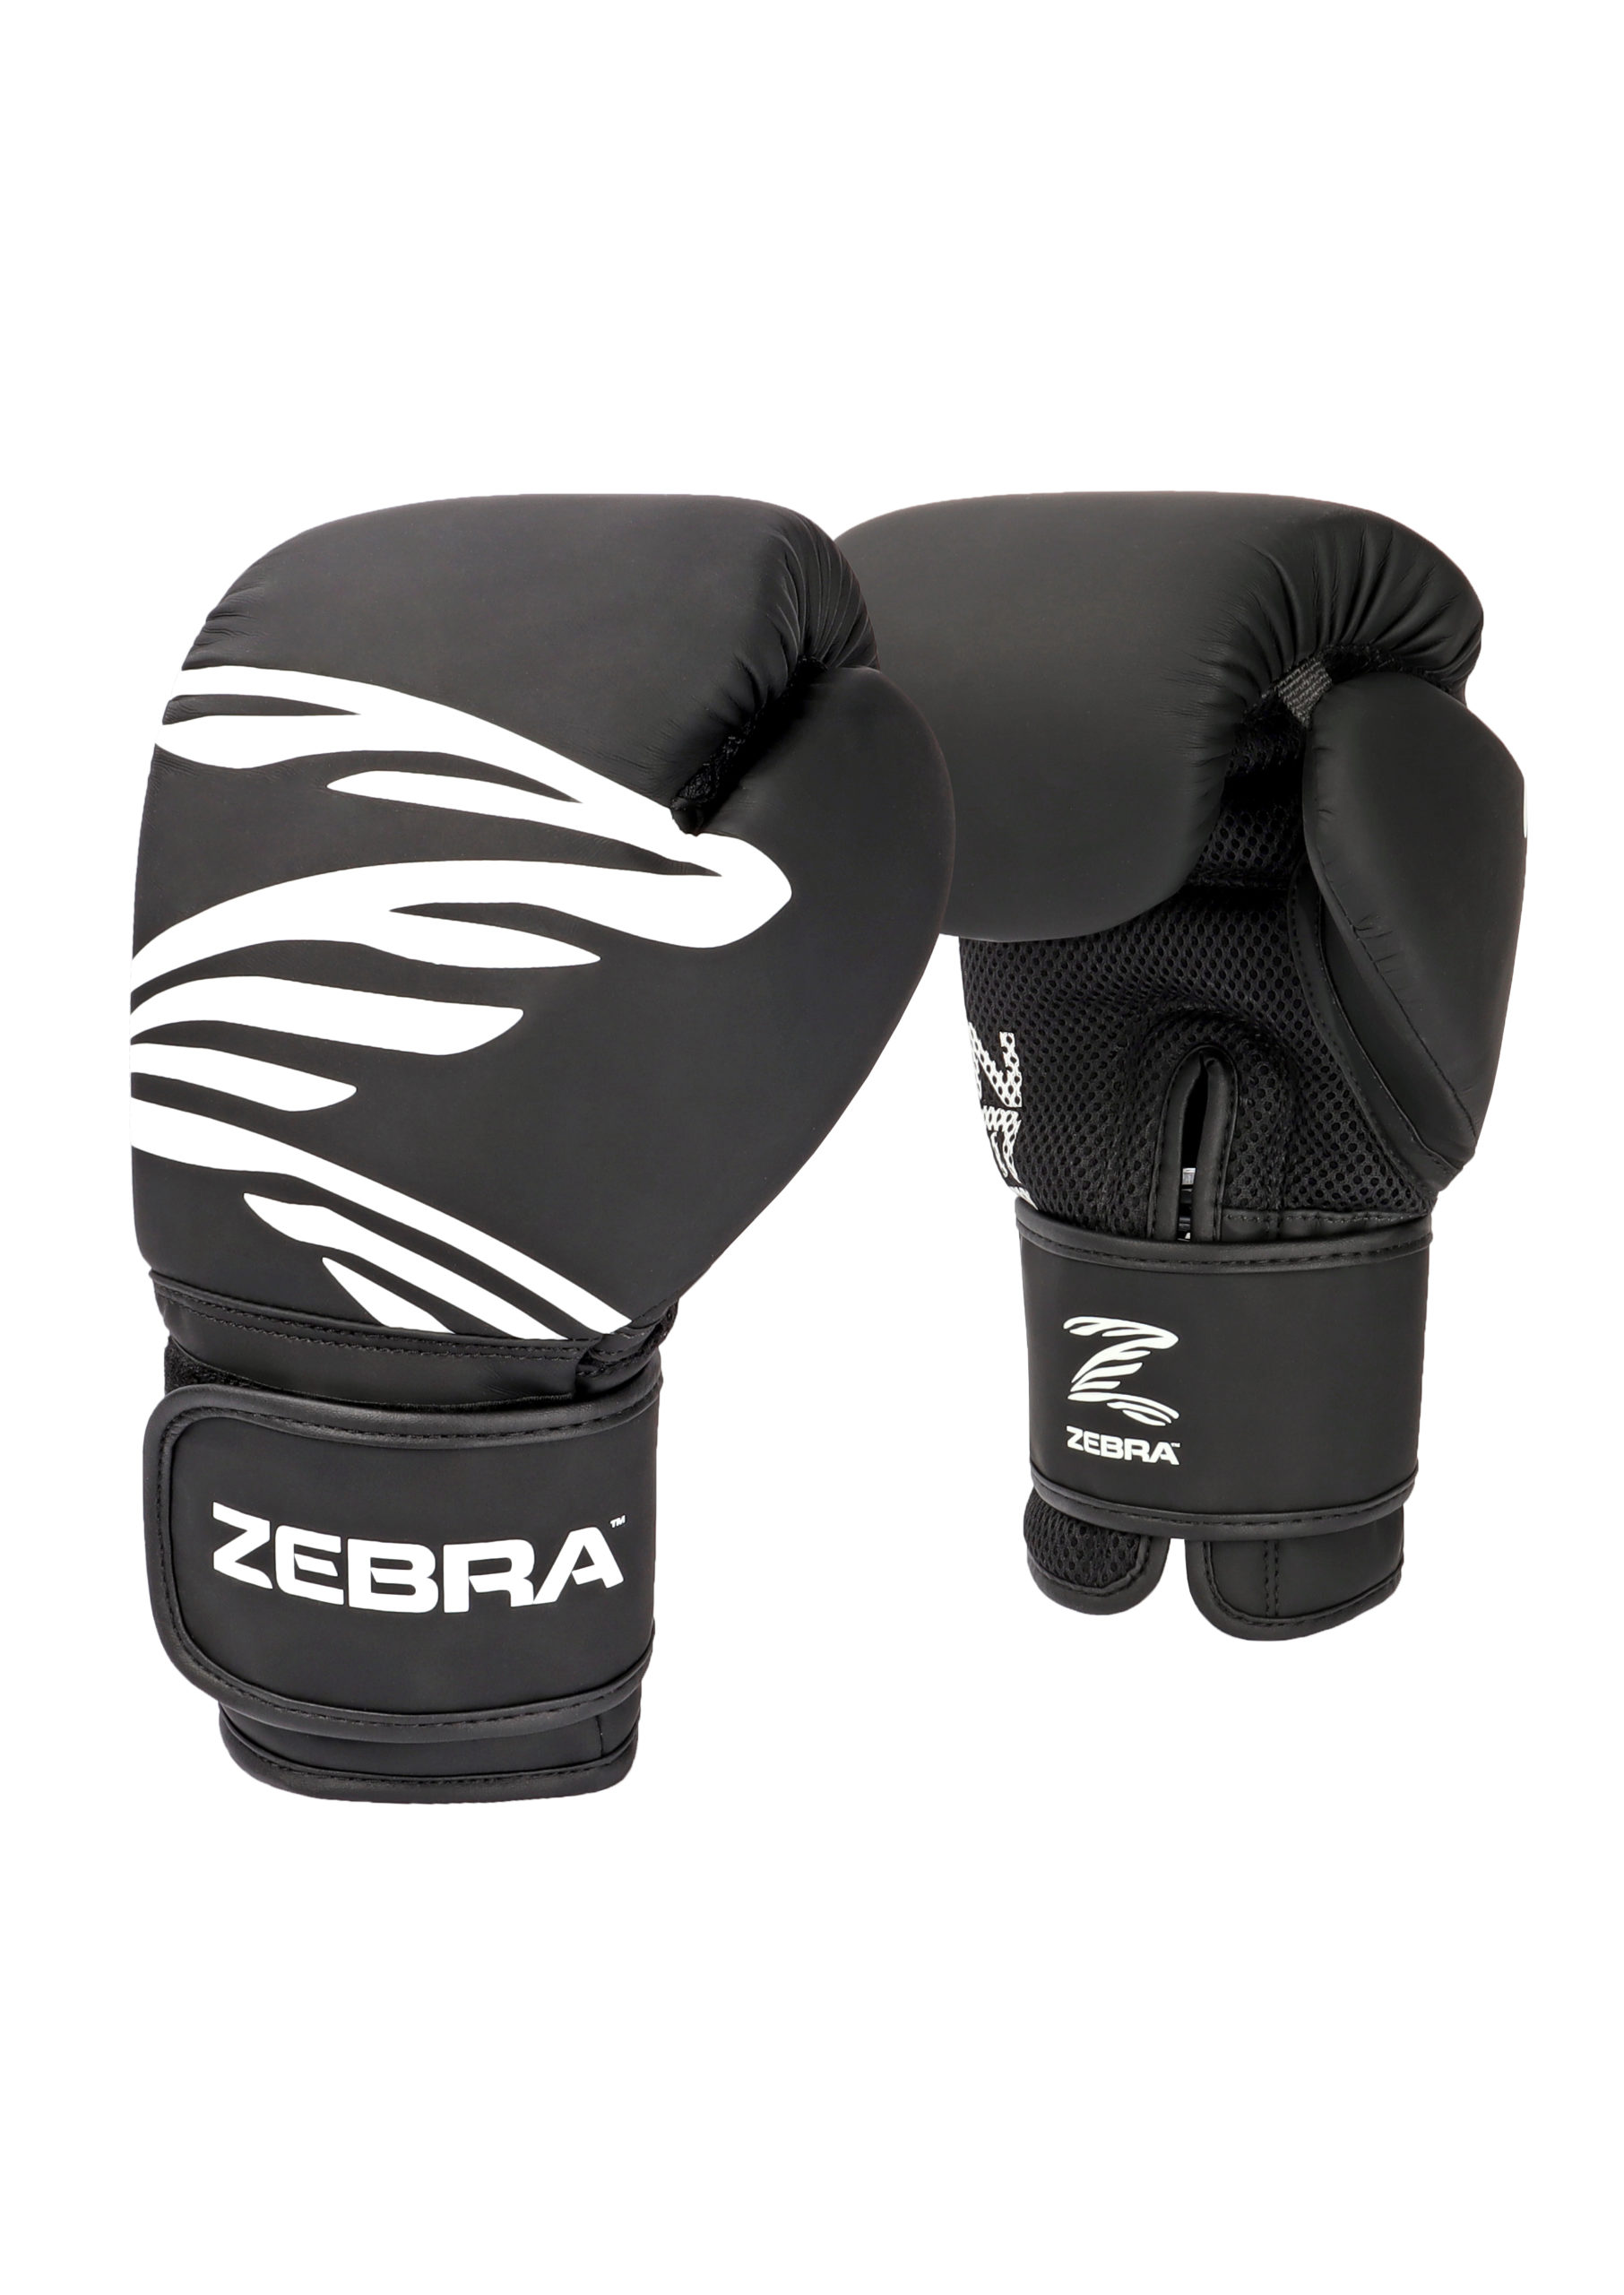 ZEBRA-FITNESS-Training-Gloves